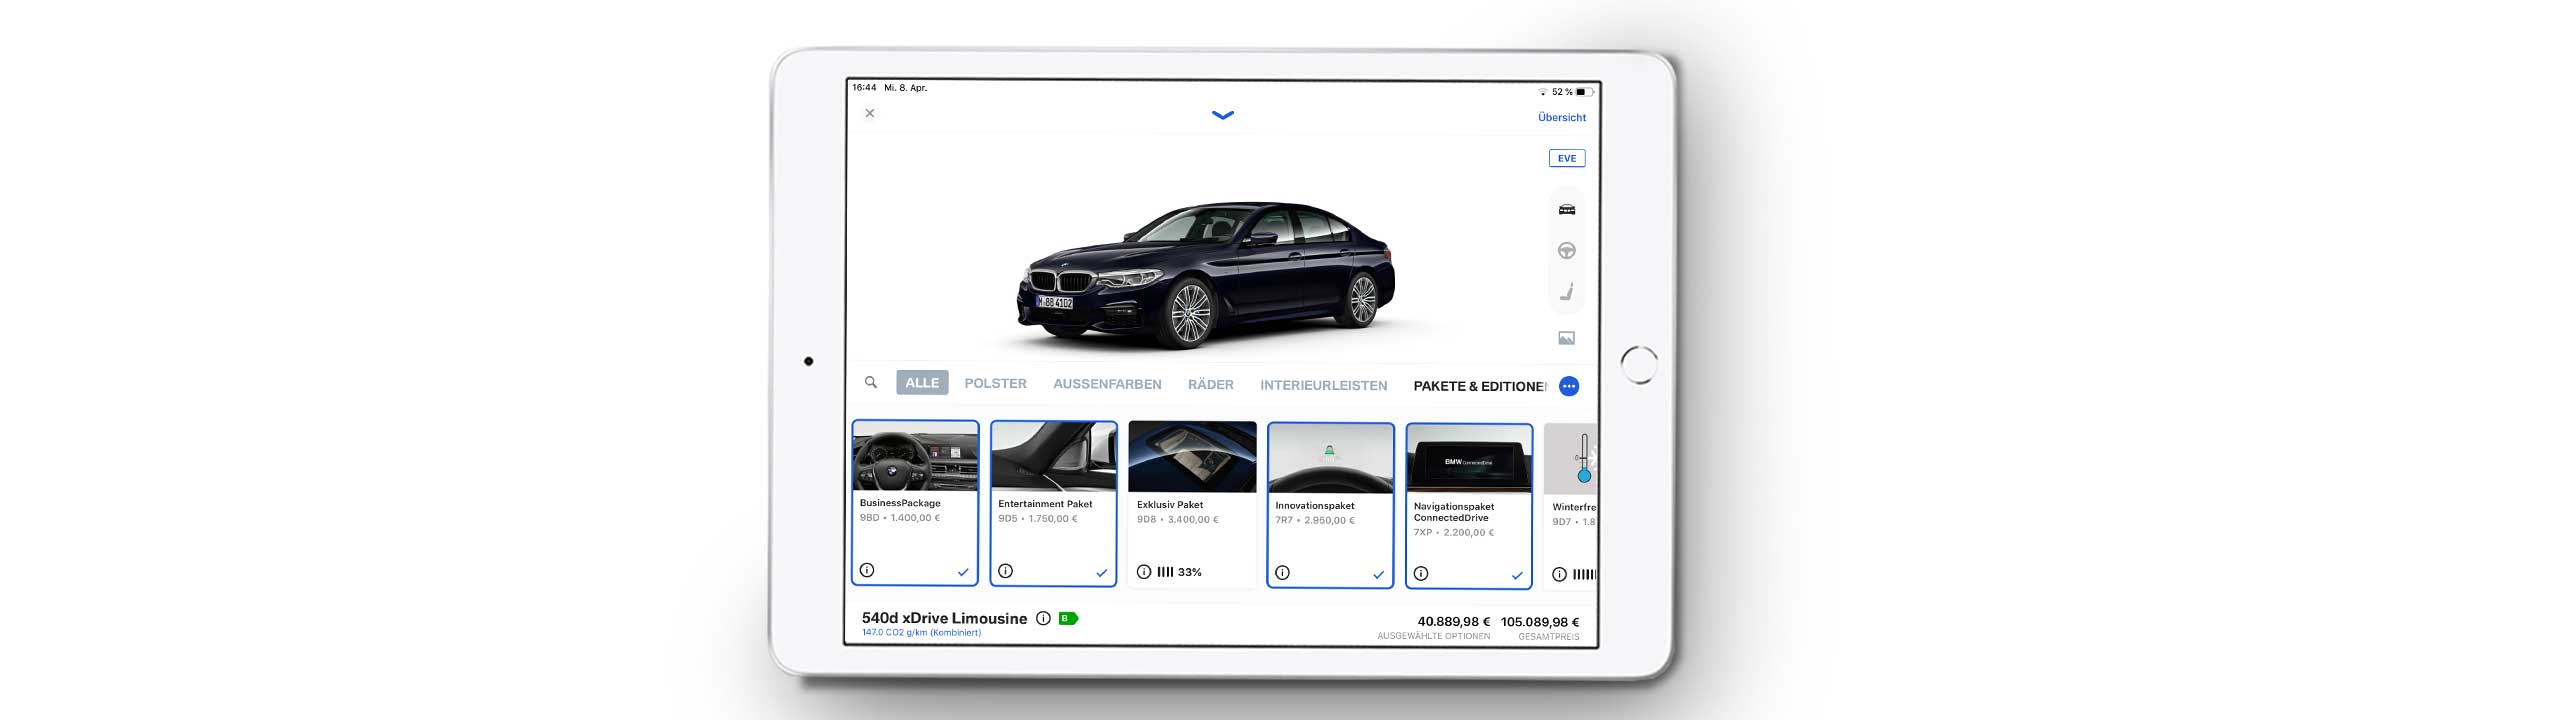 BMW Customizer Screenshot in iPad